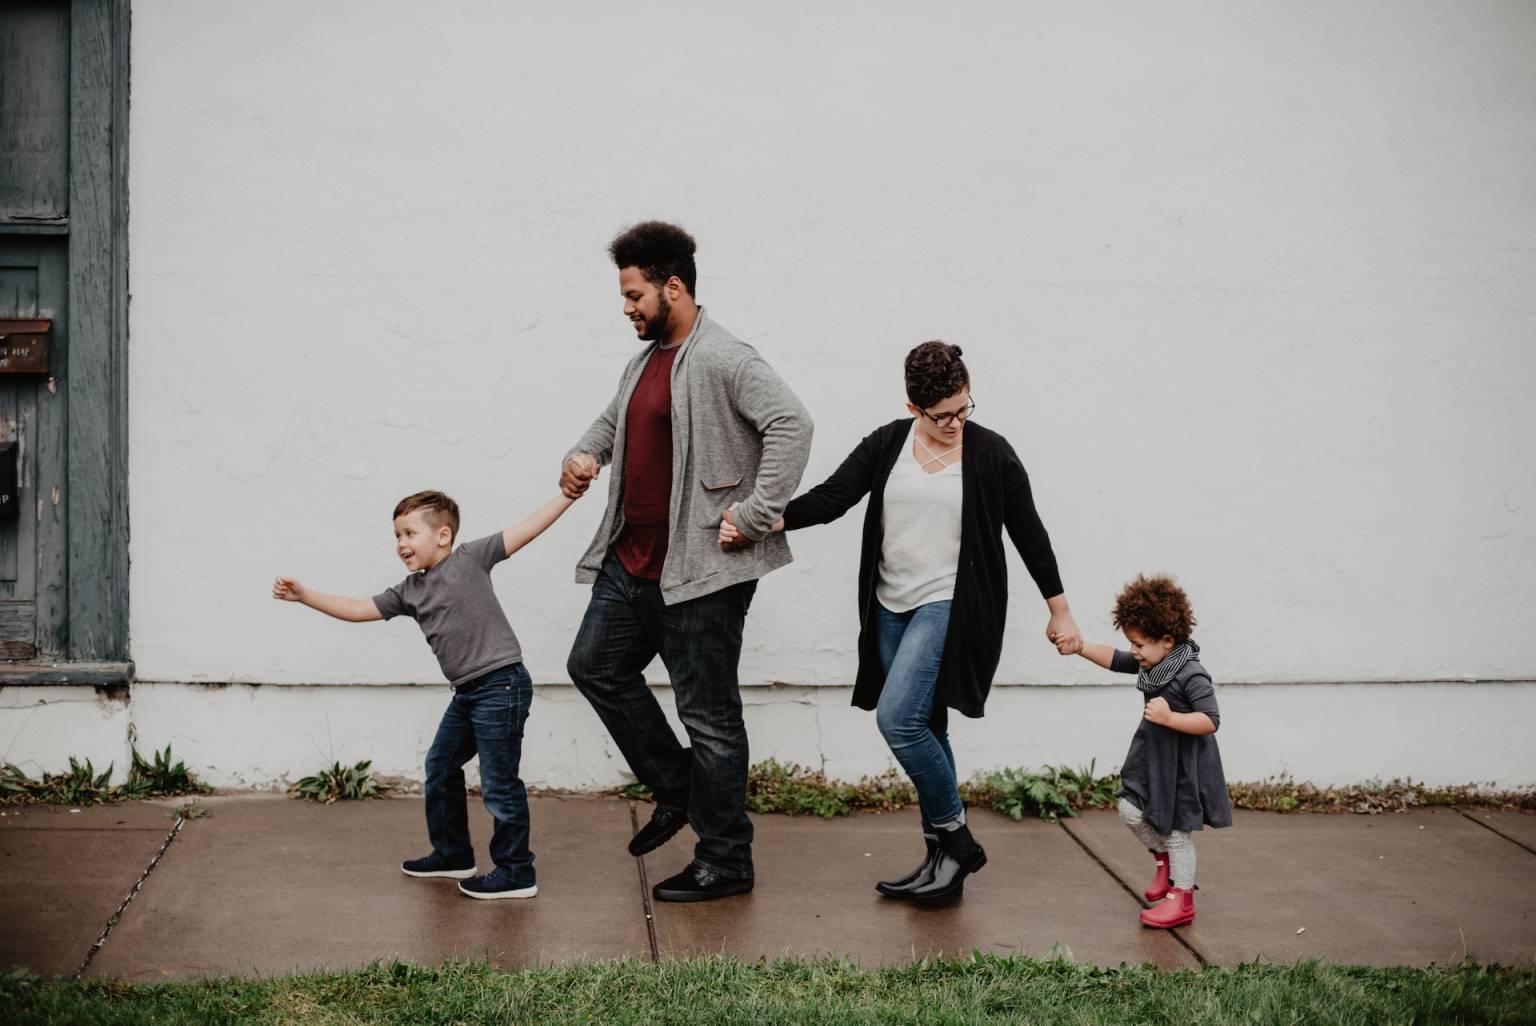 Una familia compuesta de dos padres y dos hijos pequeños camina por la calle sonriendo. Los cuatro se llevan de la mano.